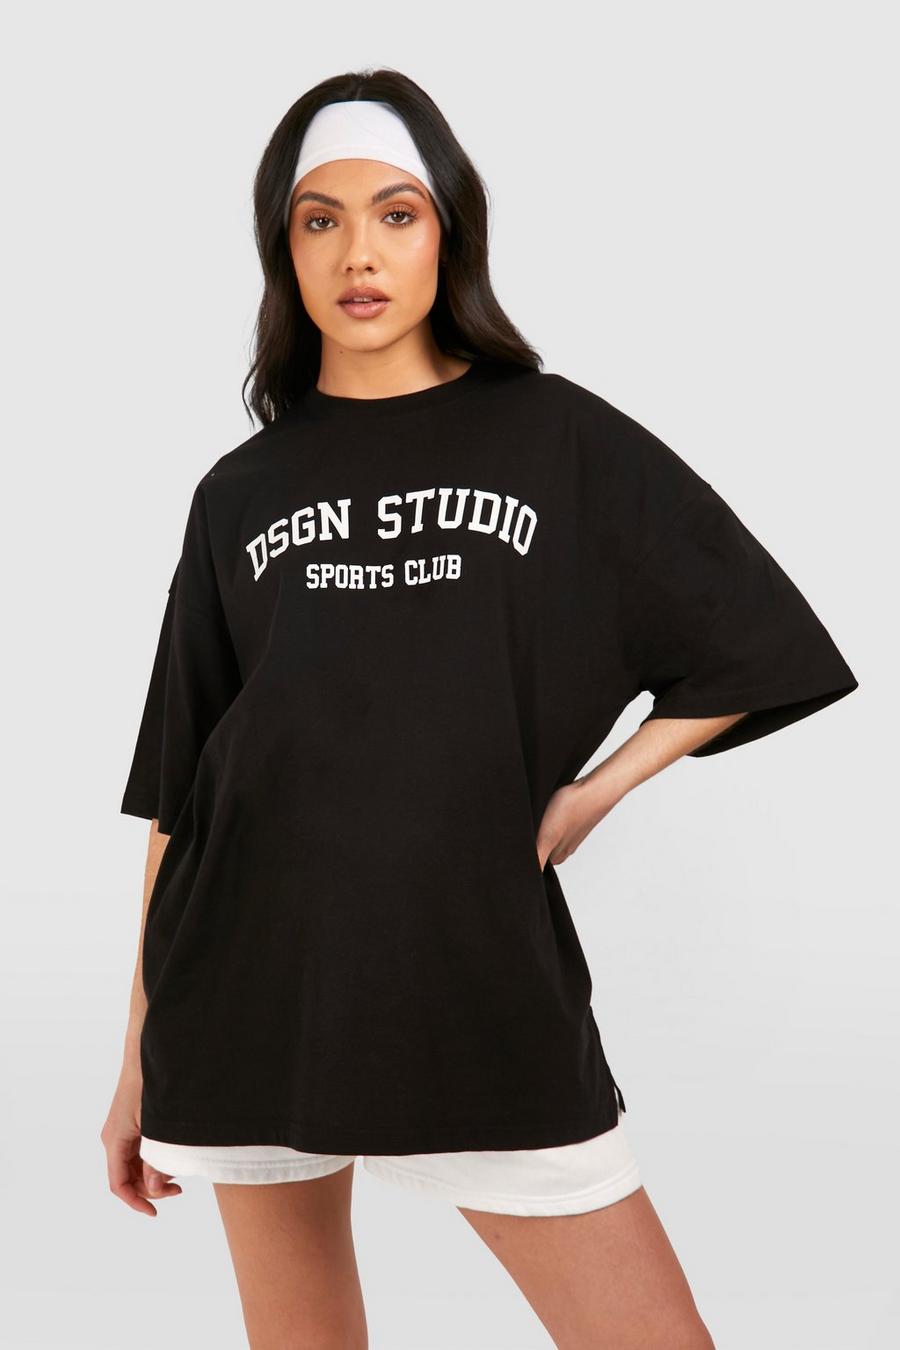 Maternité - T-shirt de grossesse oversize à slogan Dsgn Studio, Black